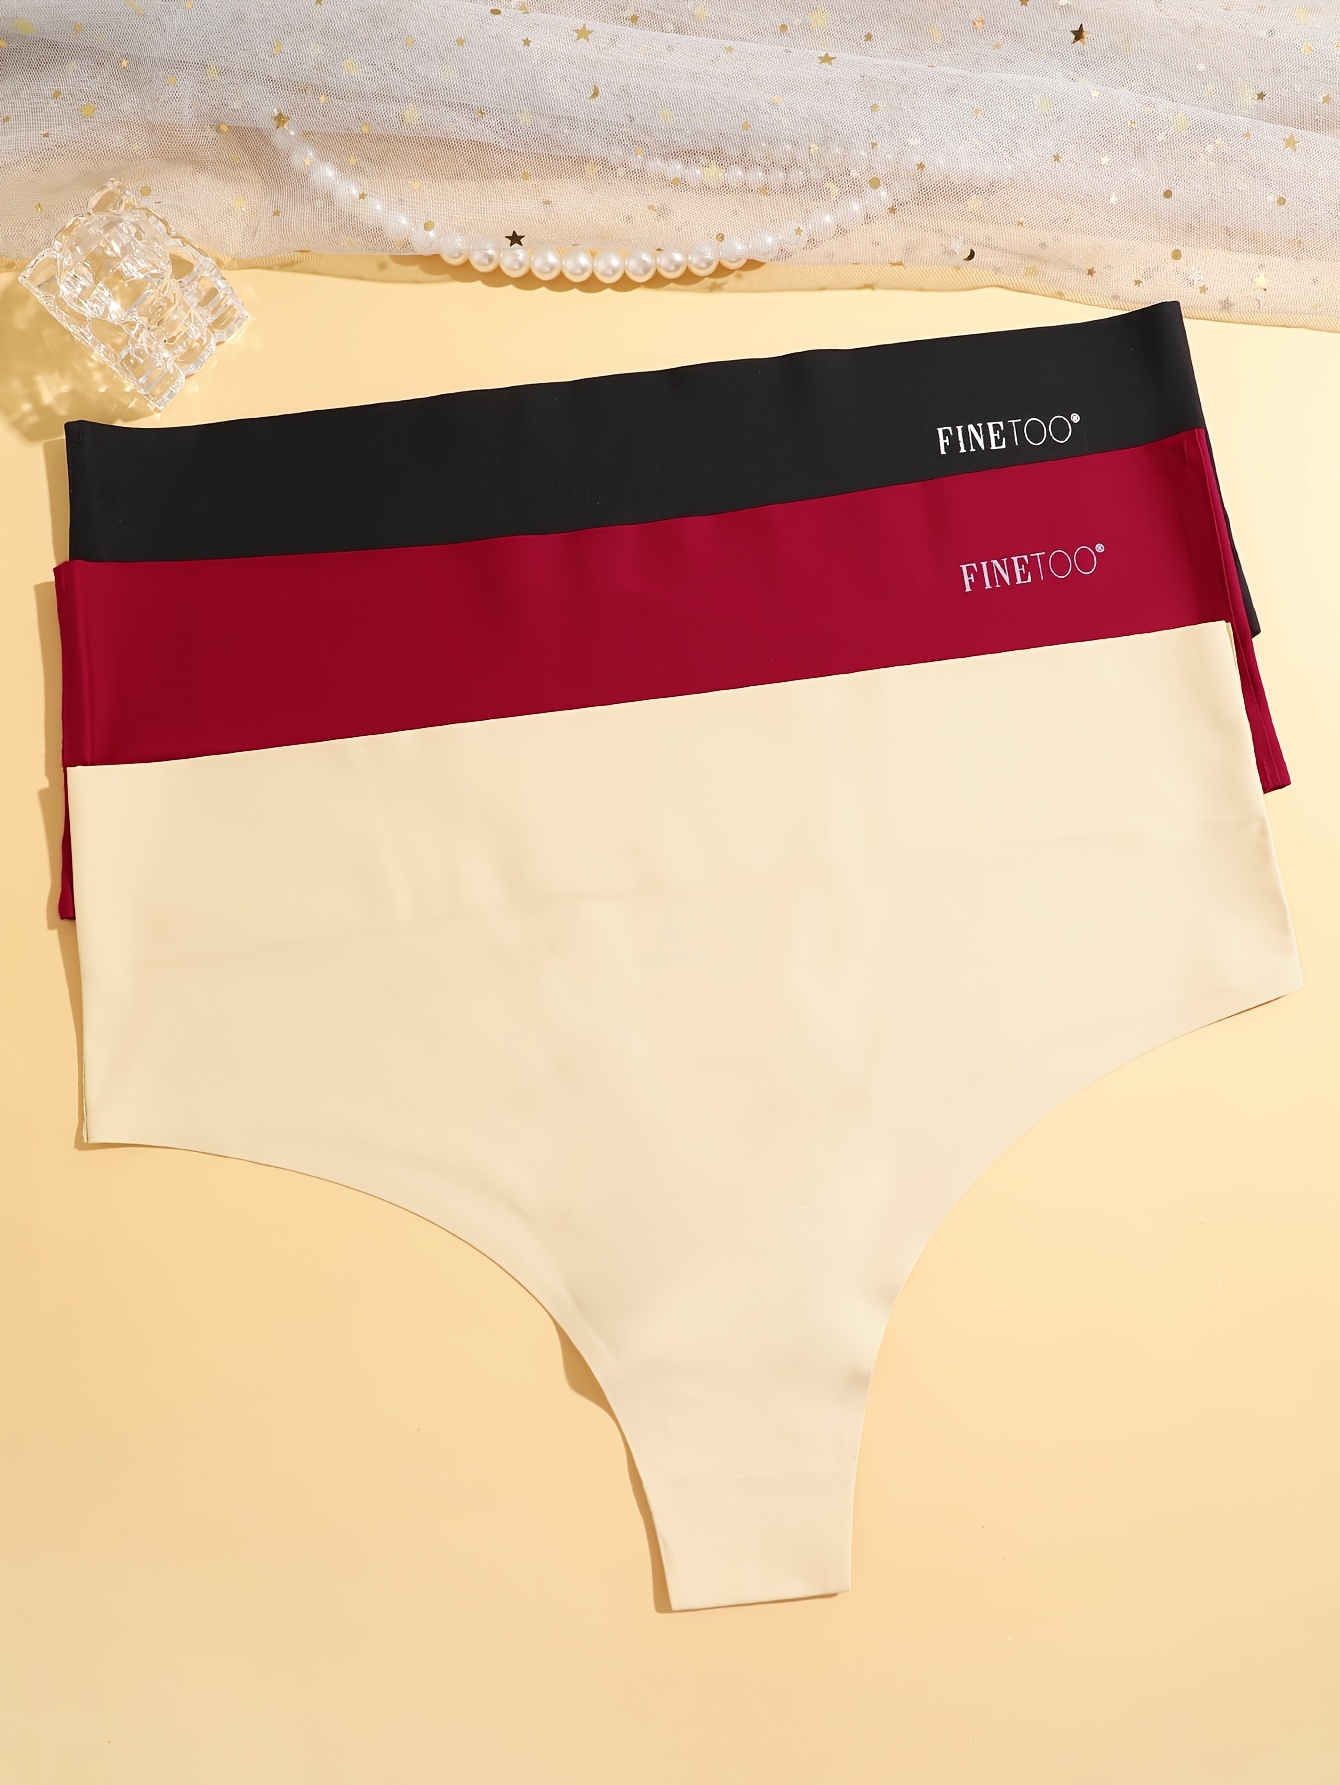 FINETOO 3Pcs/Set Cotton Panties for Women Plus Size Underpants